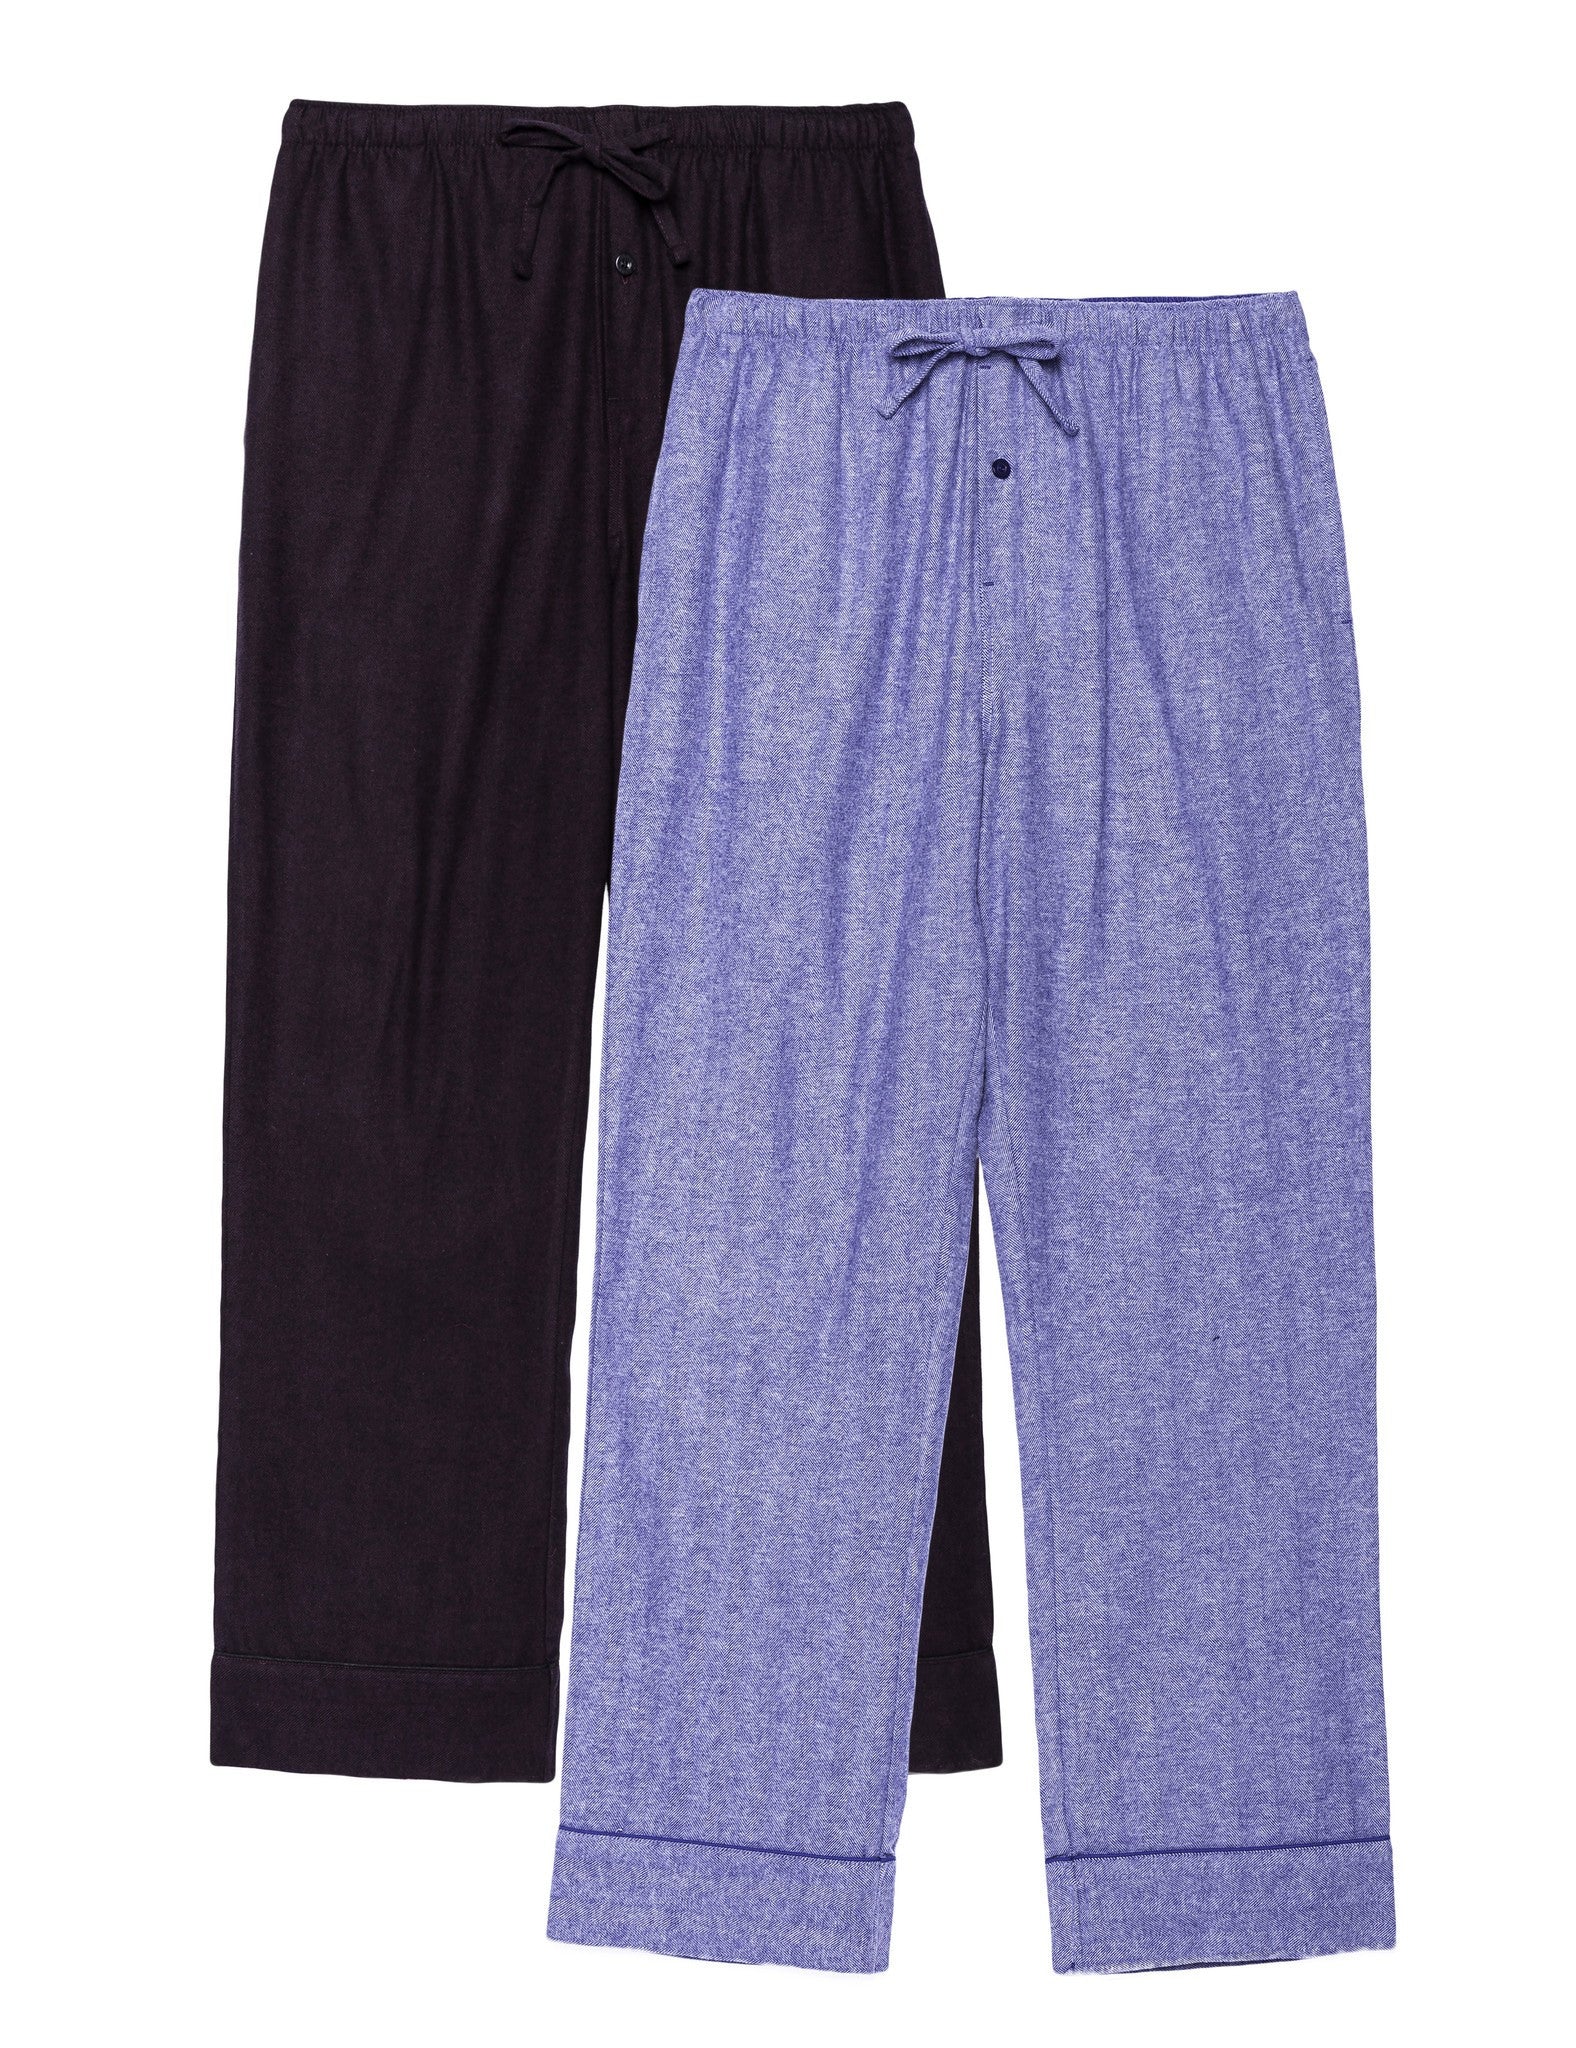 Men's 100% Cotton Flannel Lounge Pants - 2 Pack